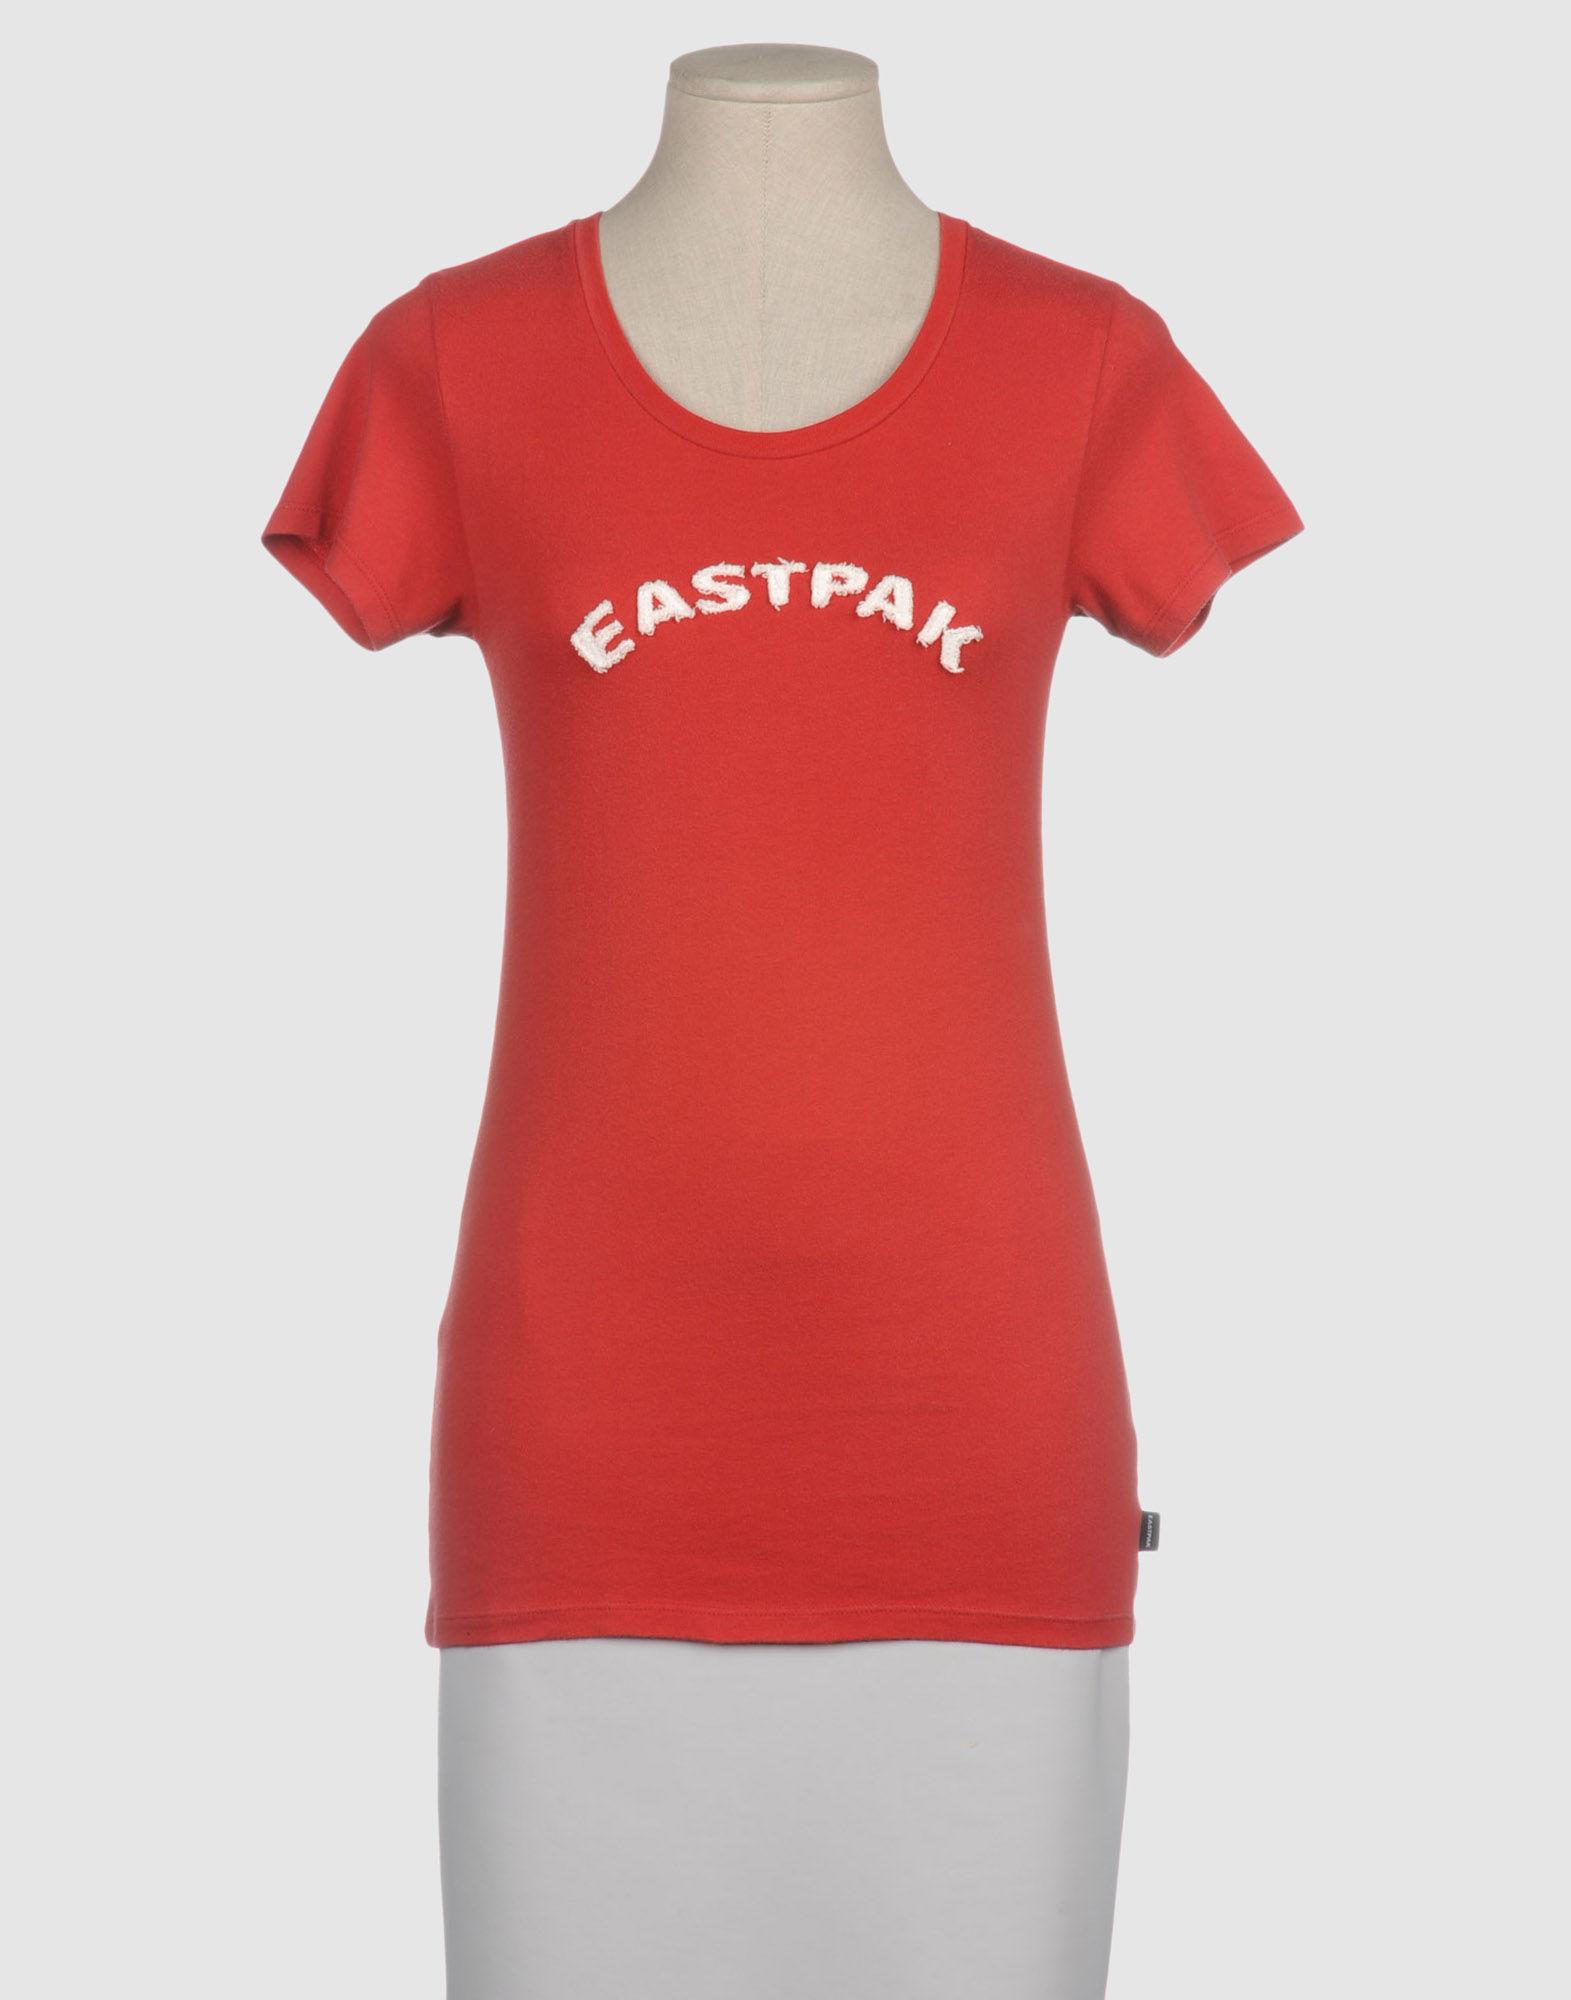 Foto Eastpak Camisetas De Manga Corta Mujer Rojo